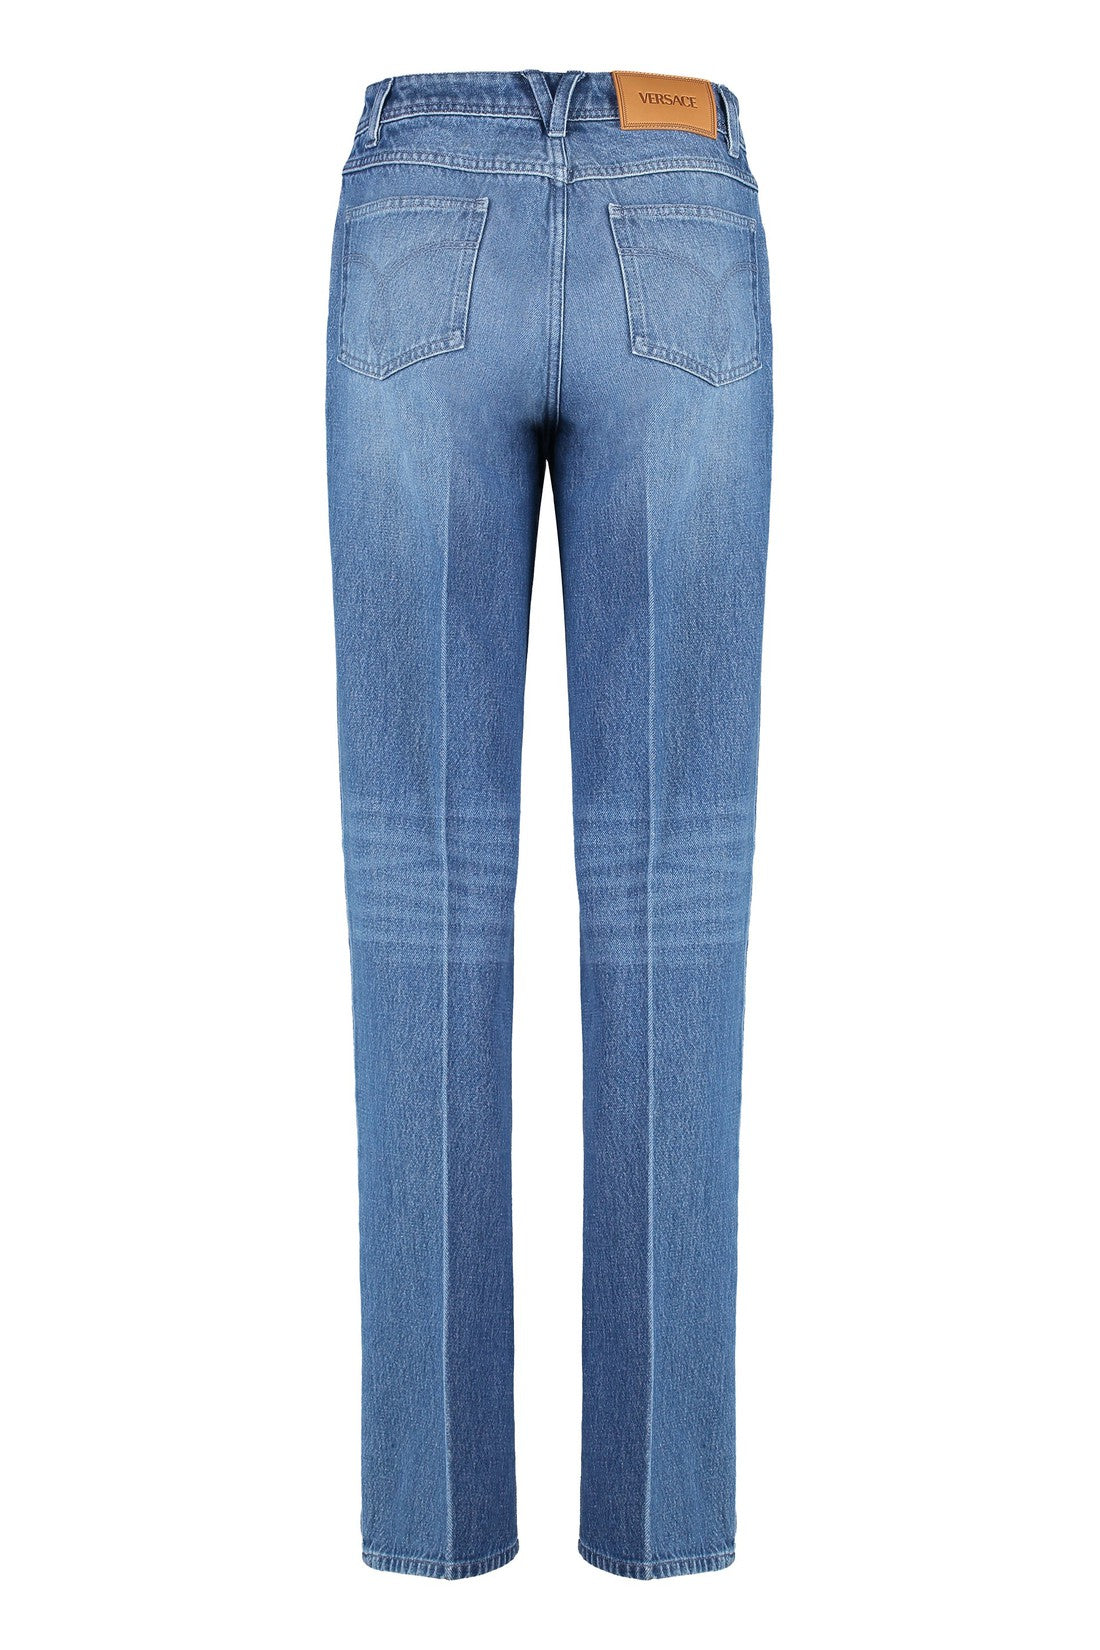 Versace-OUTLET-SALE-Boyfriend jeans-ARCHIVIST